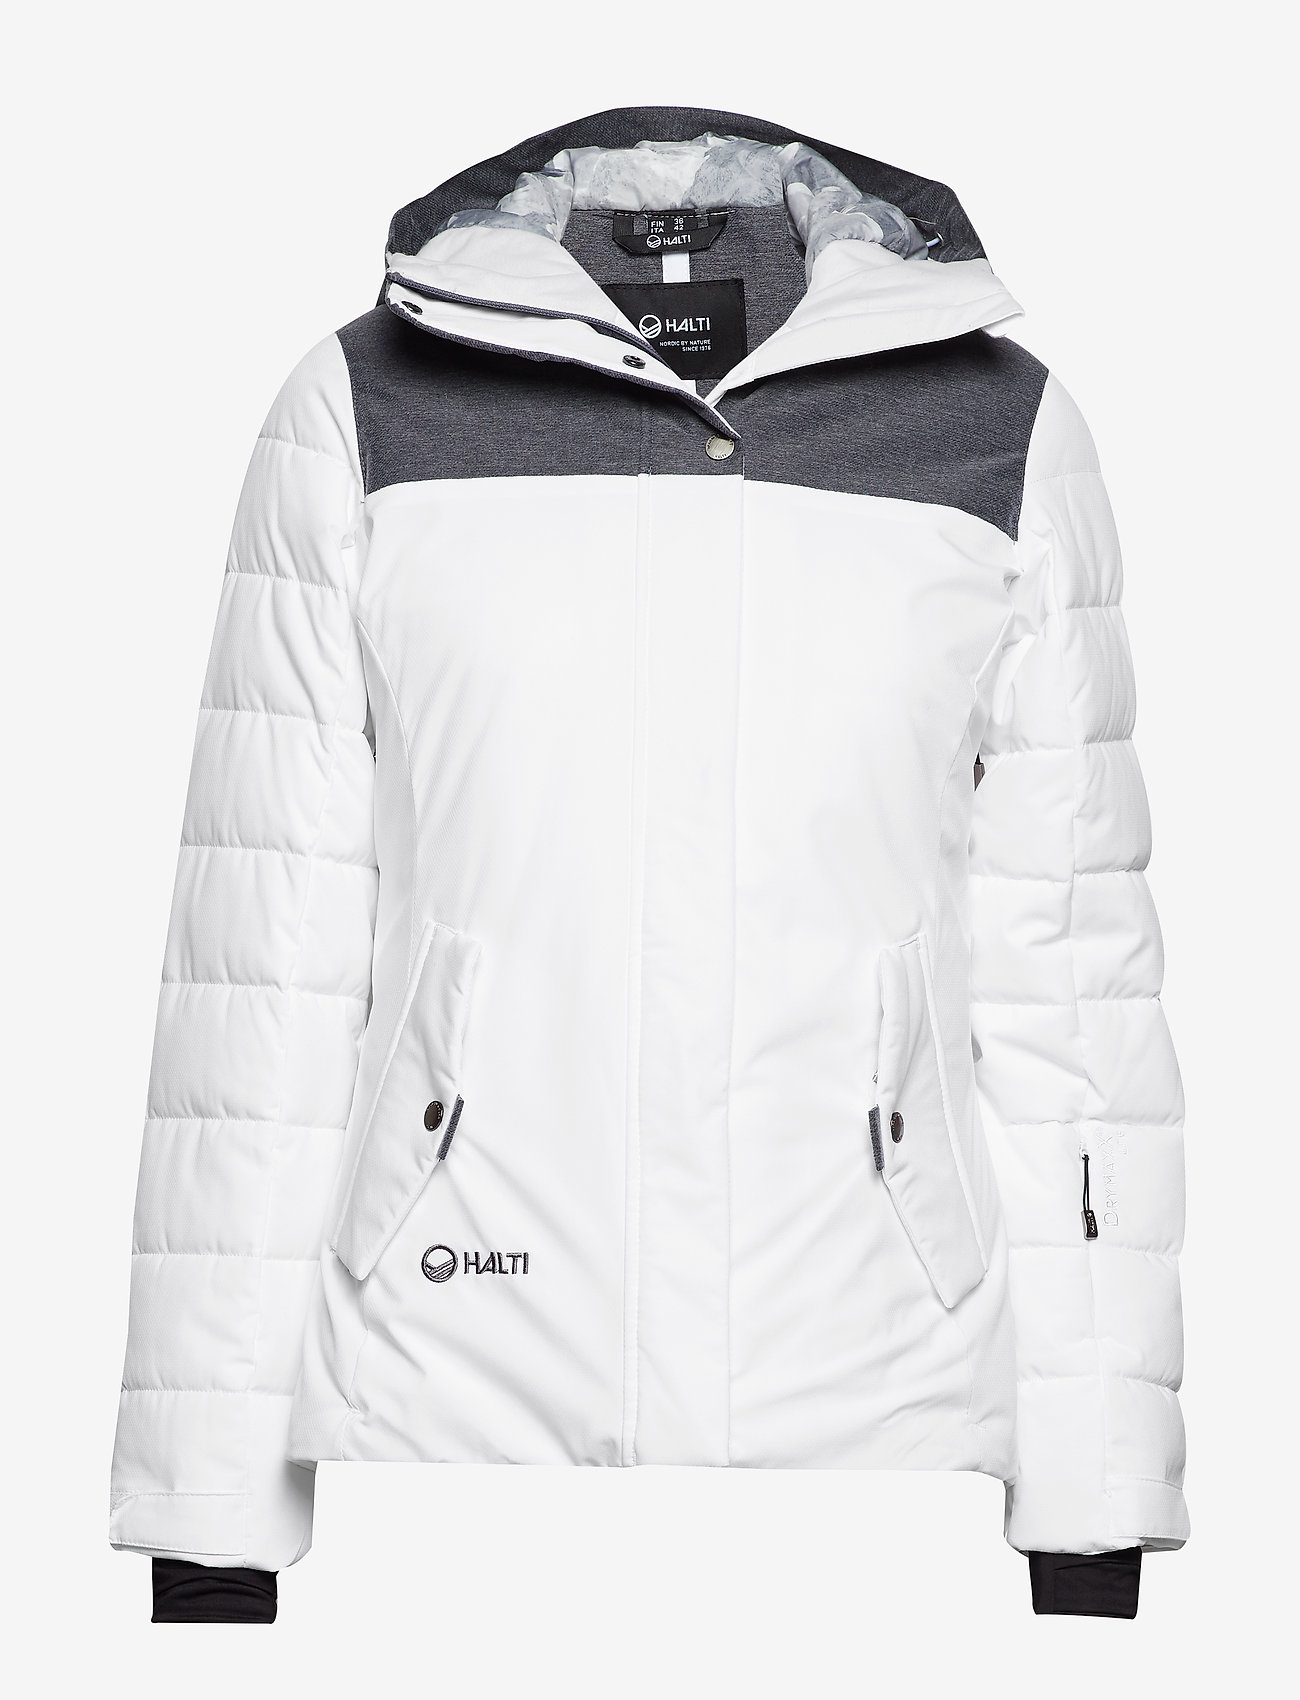 womens ski jackets under 100